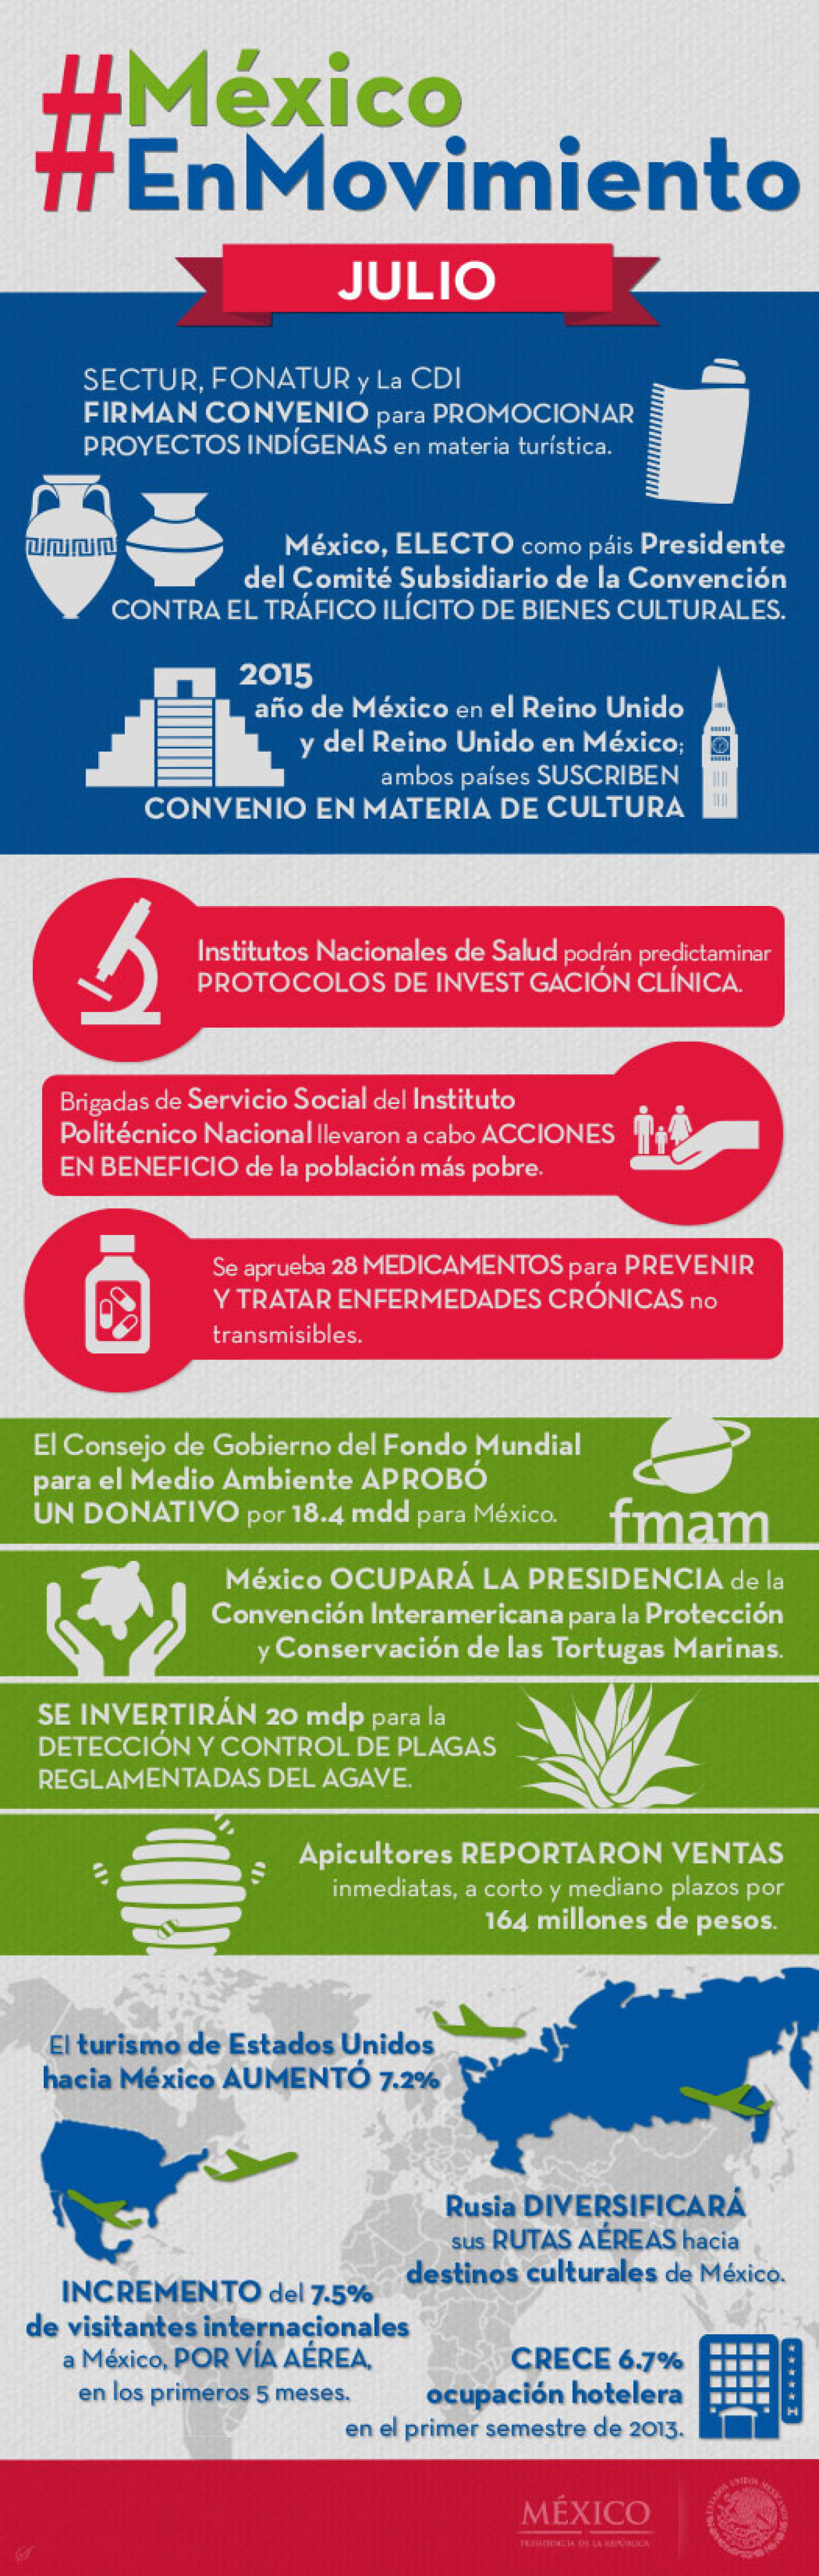 México en Movimiento Infographic